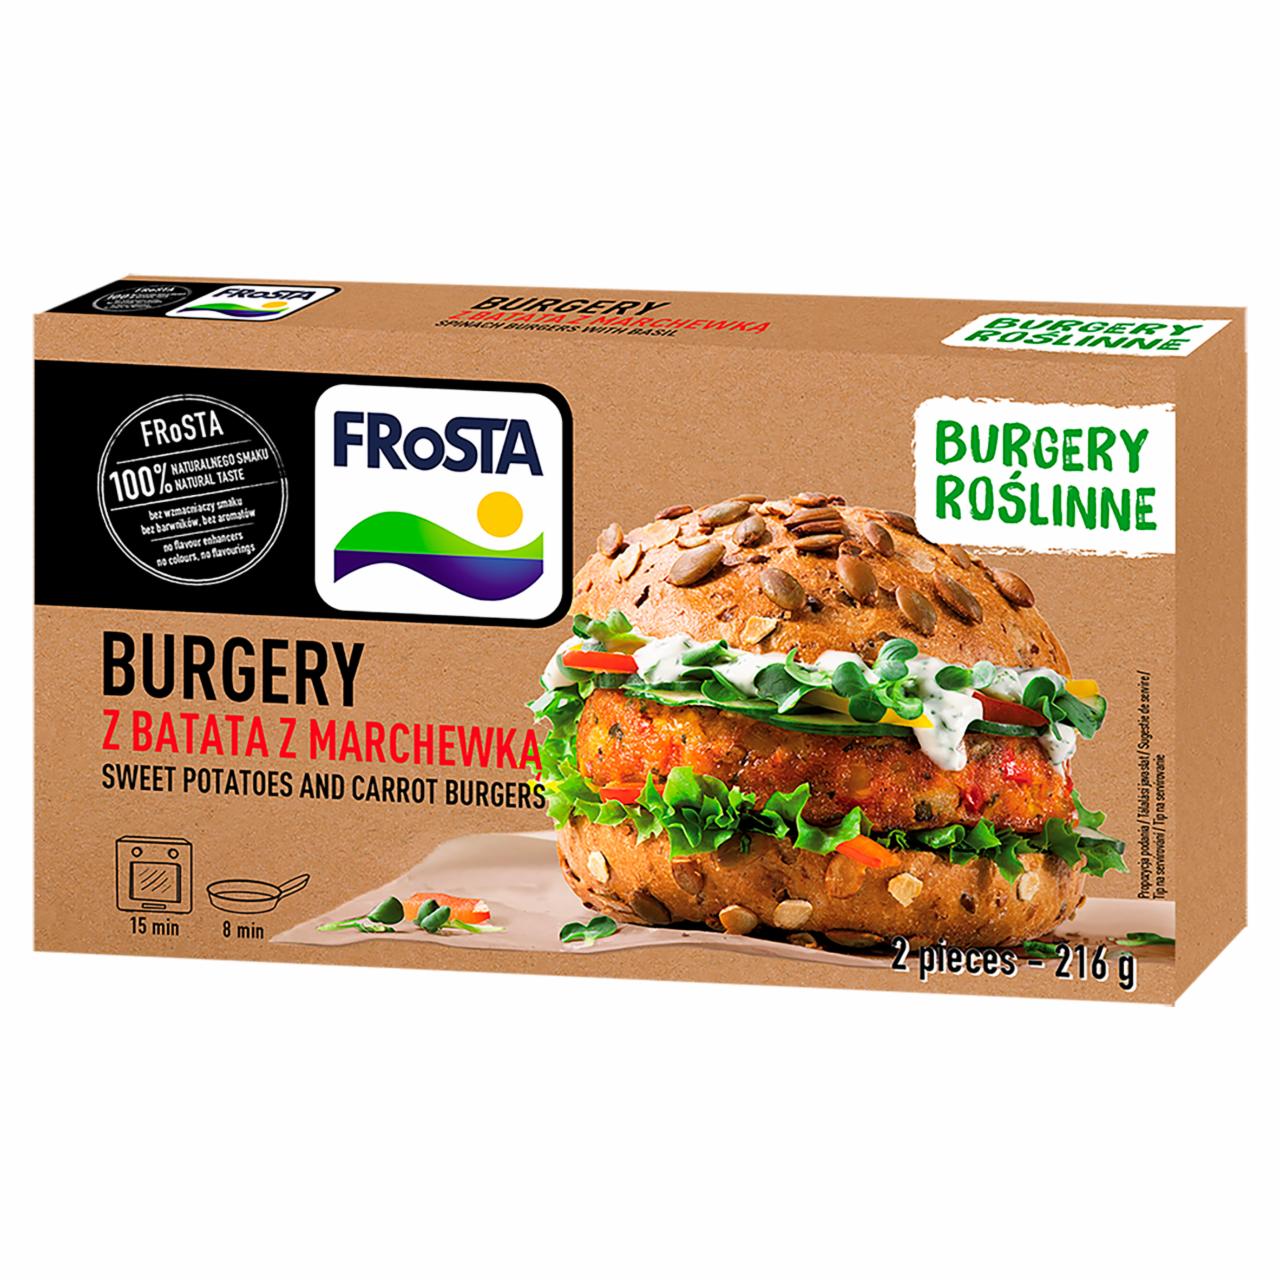 Képek - FRoSTA gyorsfagyasztott, elősütött növényi burger édesburgonyából 2 db 216 g